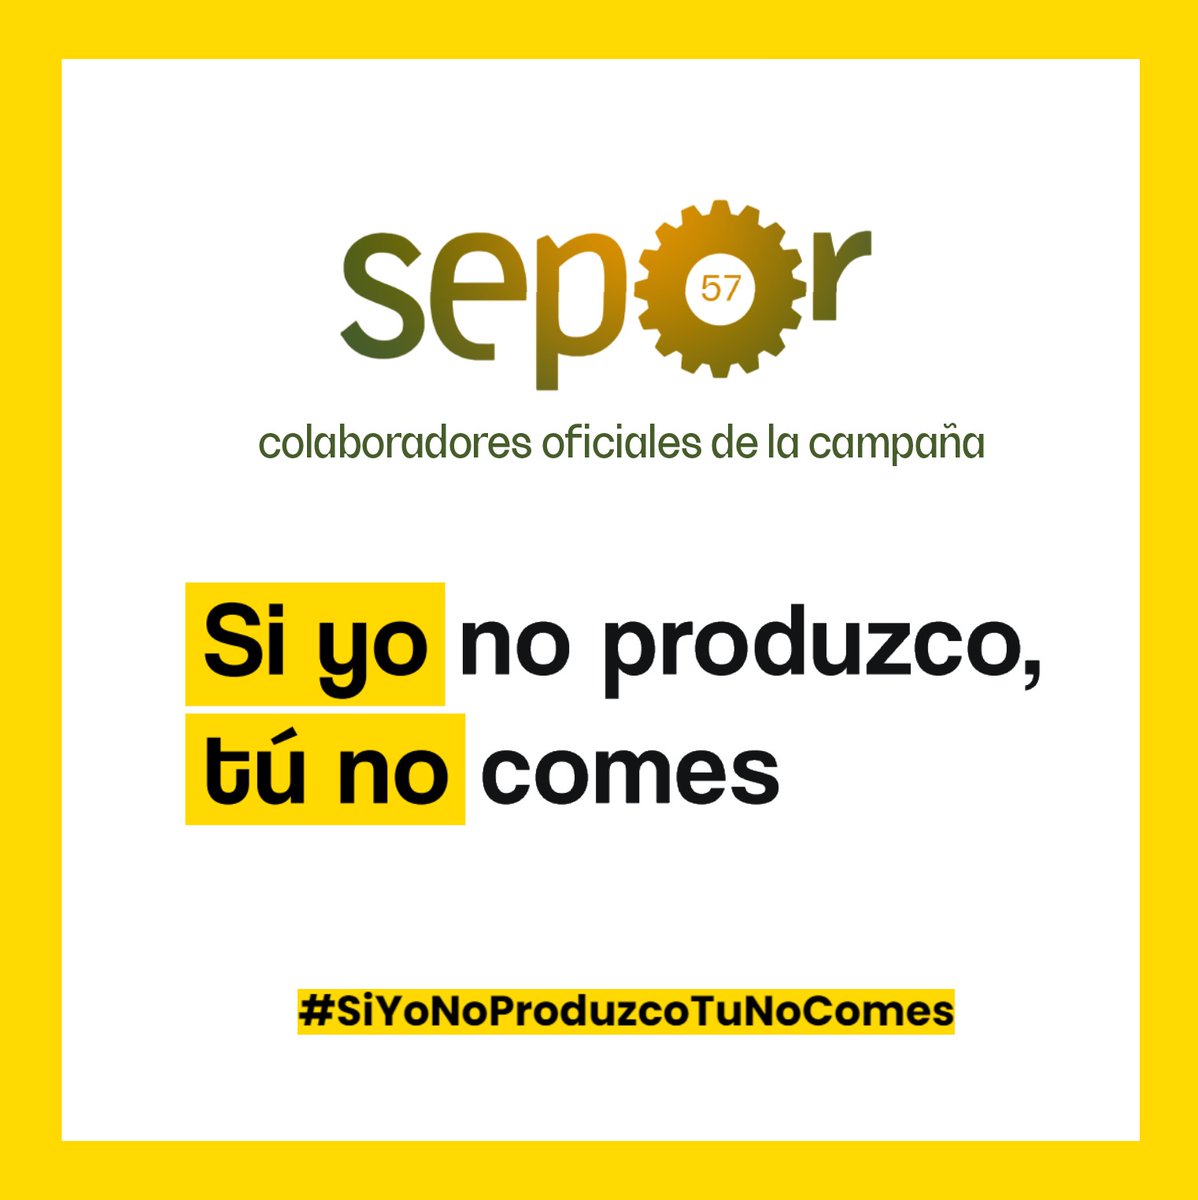 🚜🍓 El sector vive momentos críticos, por eso nos sumamos a la campaña #siyonoproduzcotúnocomes

¡Por unas condiciones dignas para el campo español!